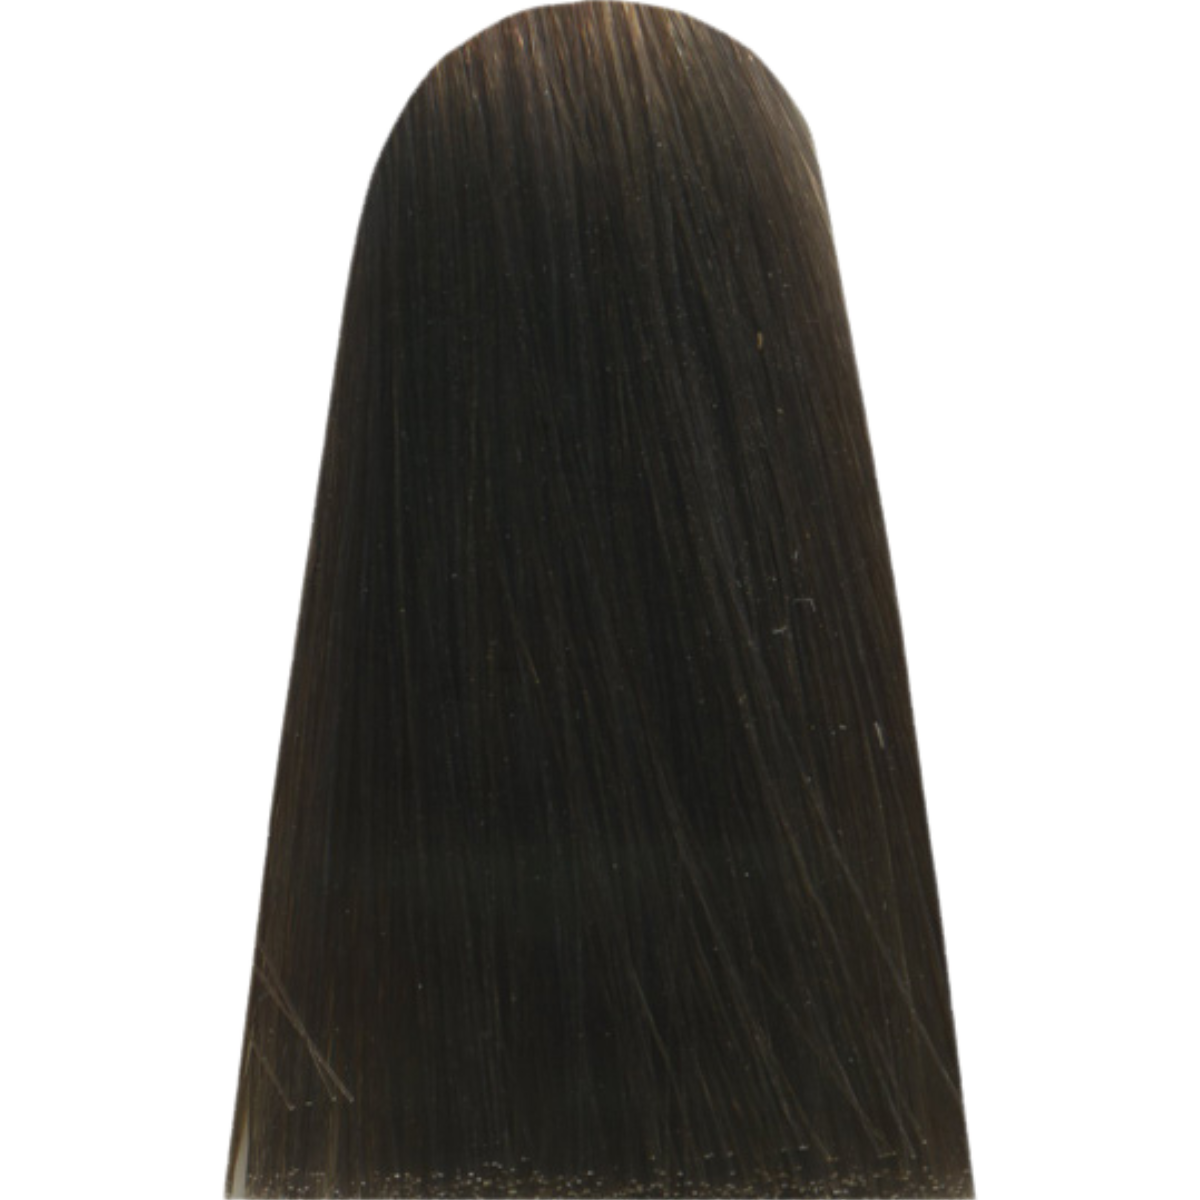 צבע שיער 8,1 LIGHT ASH BLOND INFORCED מג`ירל MAJIREL לוריאל צבע לשיער 50 גרם